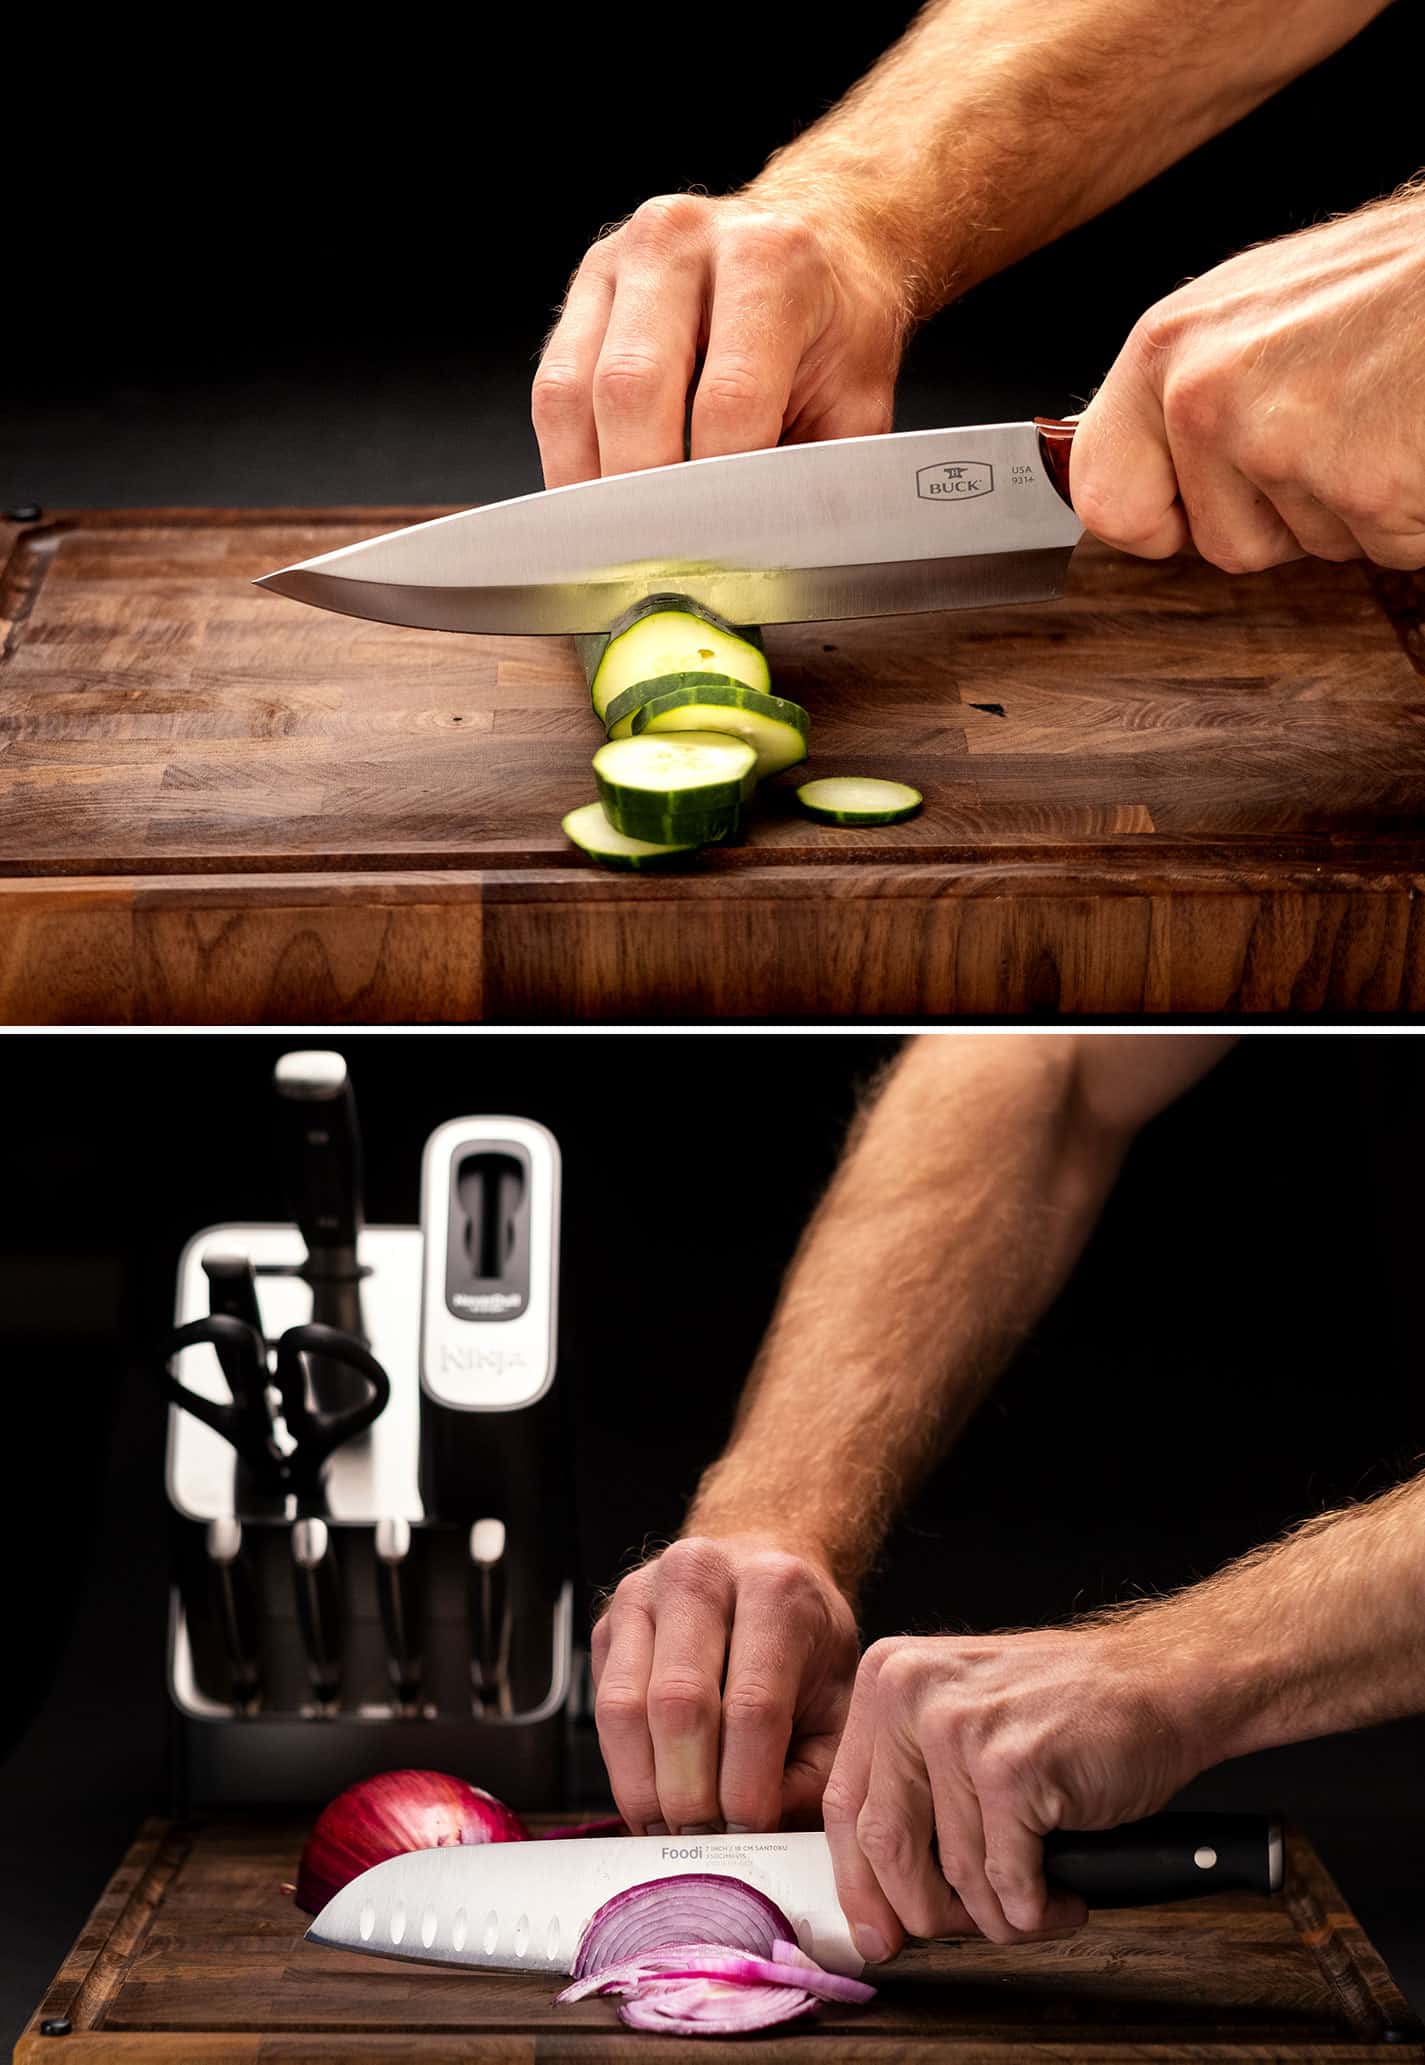 Ninja Black Kitchen Knife Sets